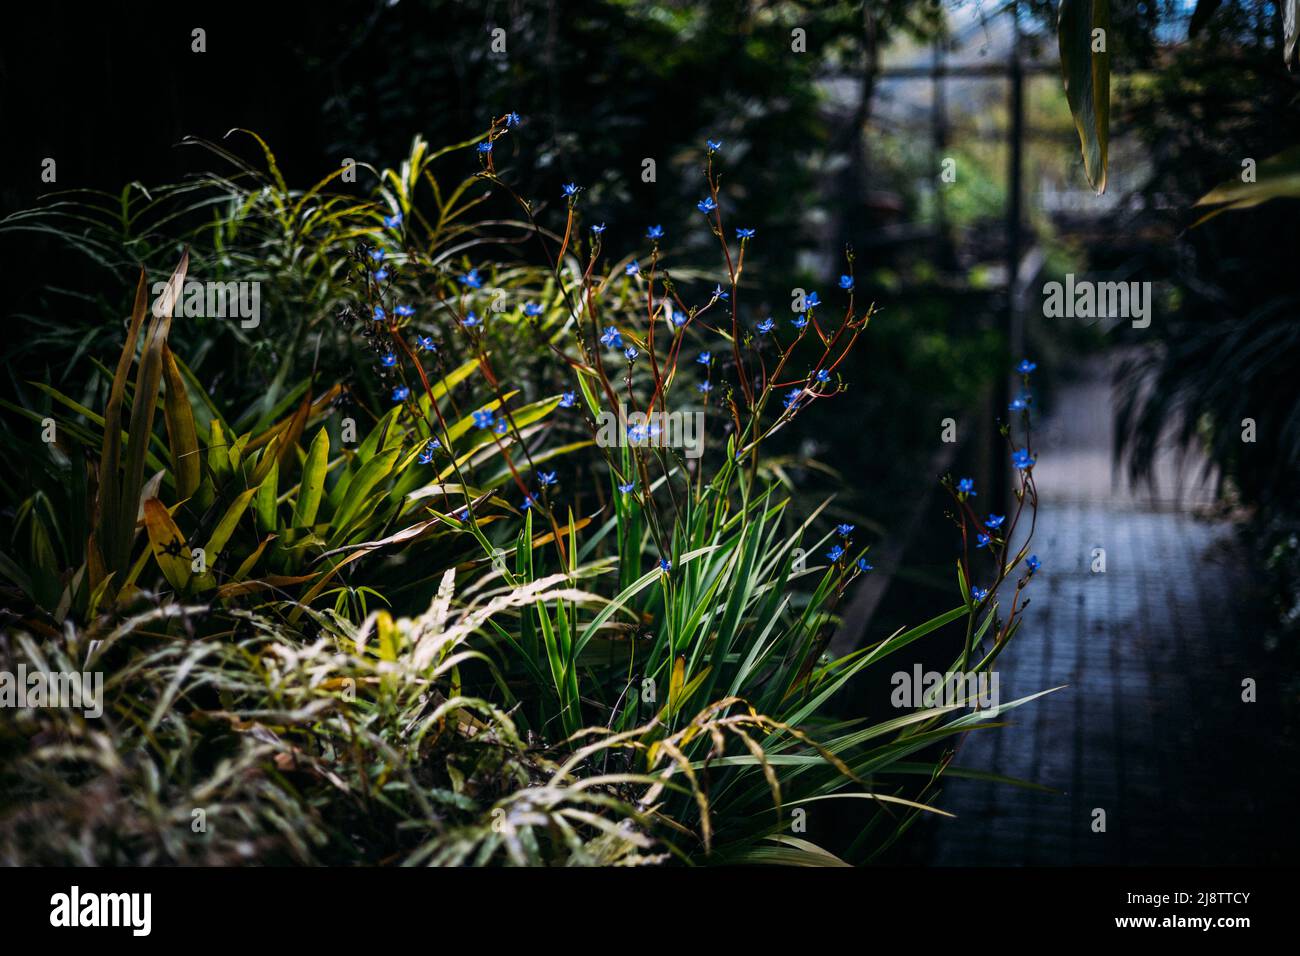 Porto, Portugal, 11.04.22: Planzen in einem Gewächshaus im botanischen Garten.   Foto: pressefoto Mika Volkmann Stock Photo